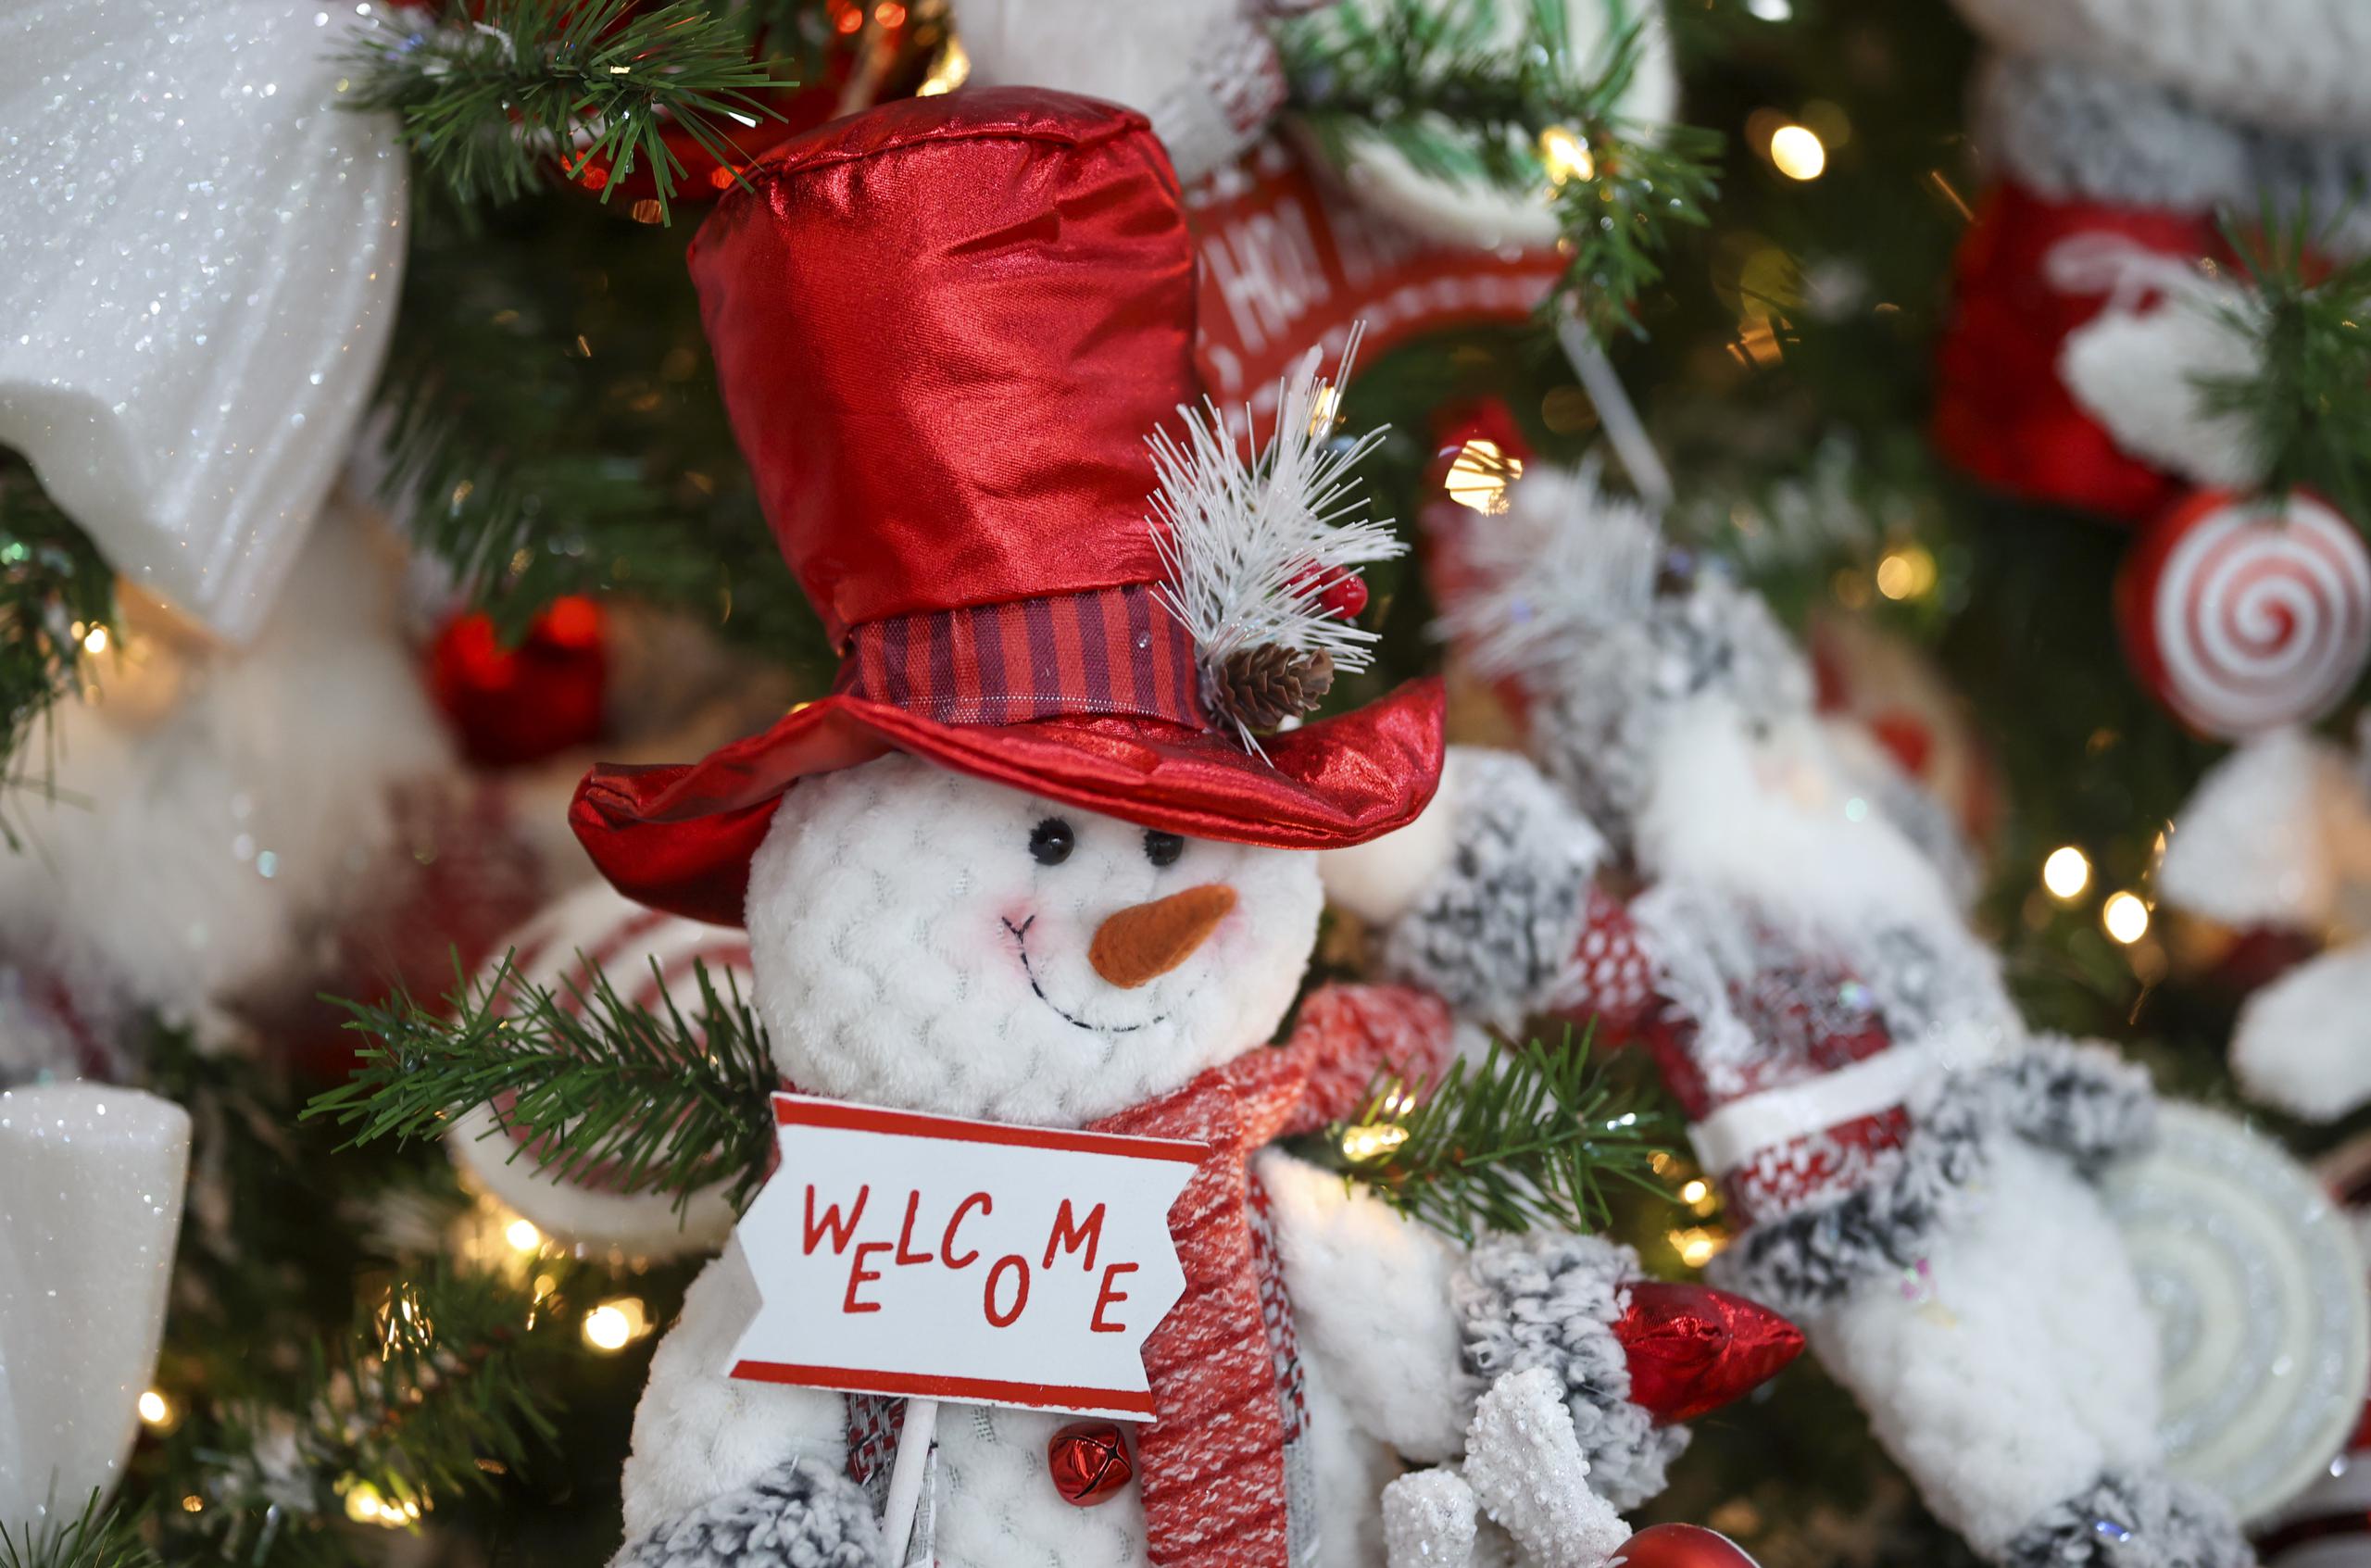 La Navidad se asocia con unión de la familia, amigos, regalos y parrandas.